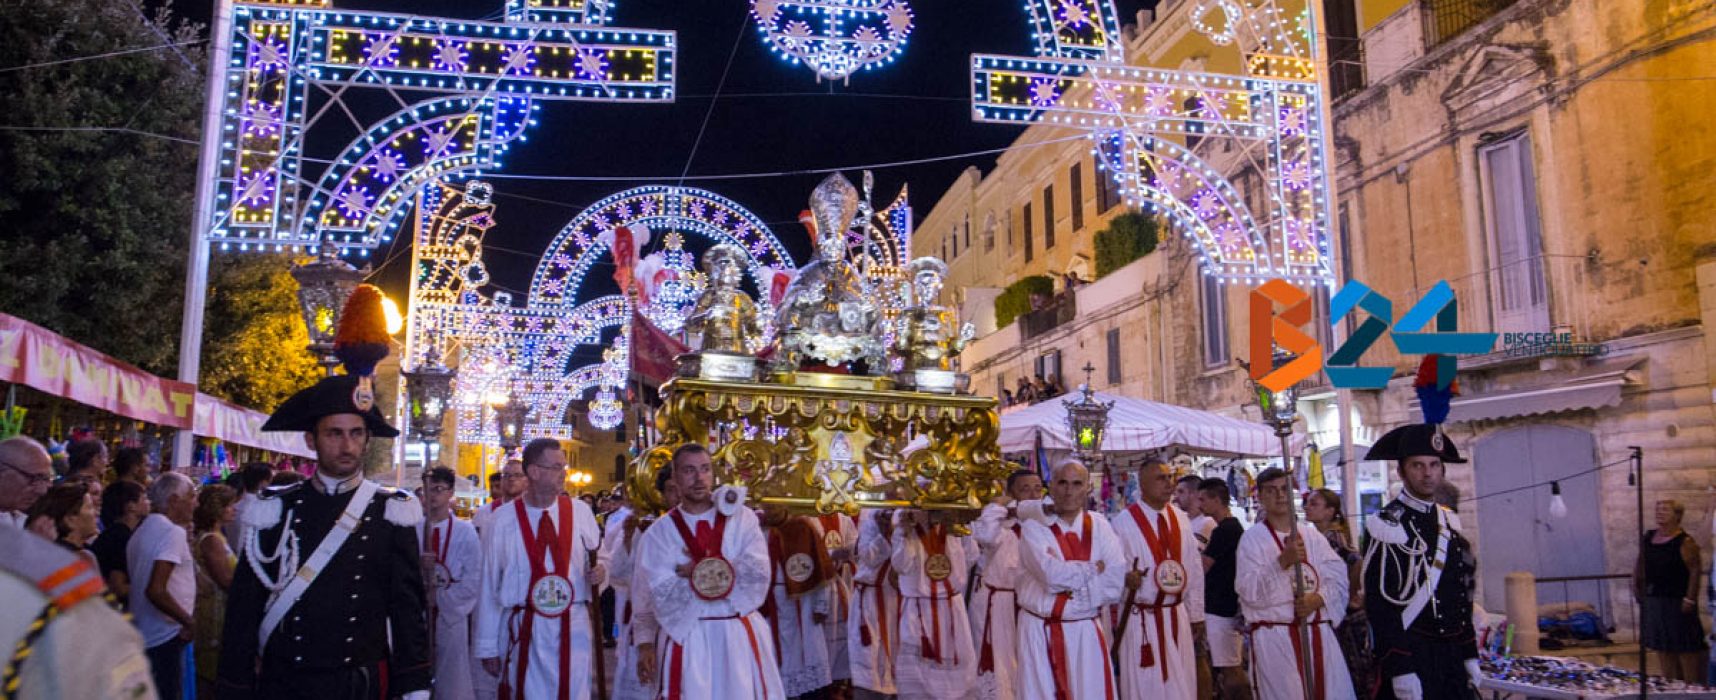 Festa patronale, sacralità e tradizione rivivono nei festeggiamenti della domenica dei santi / FOTO